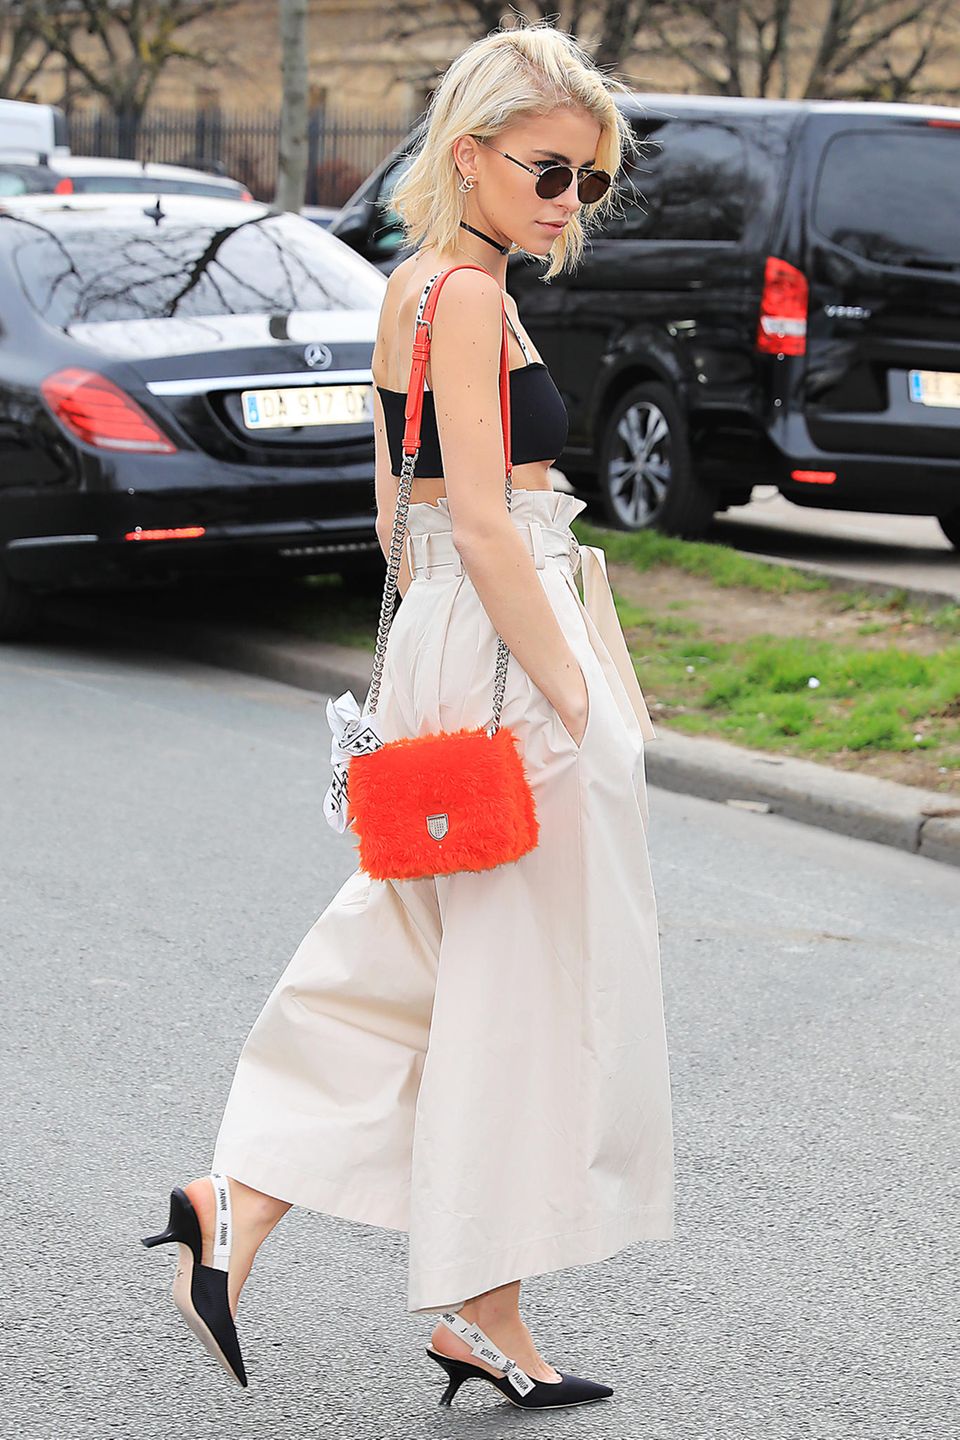 Caro Daur trägt zur weiten Hose Dior-Sling-Pumps und eine Tasche in Knallfarbe